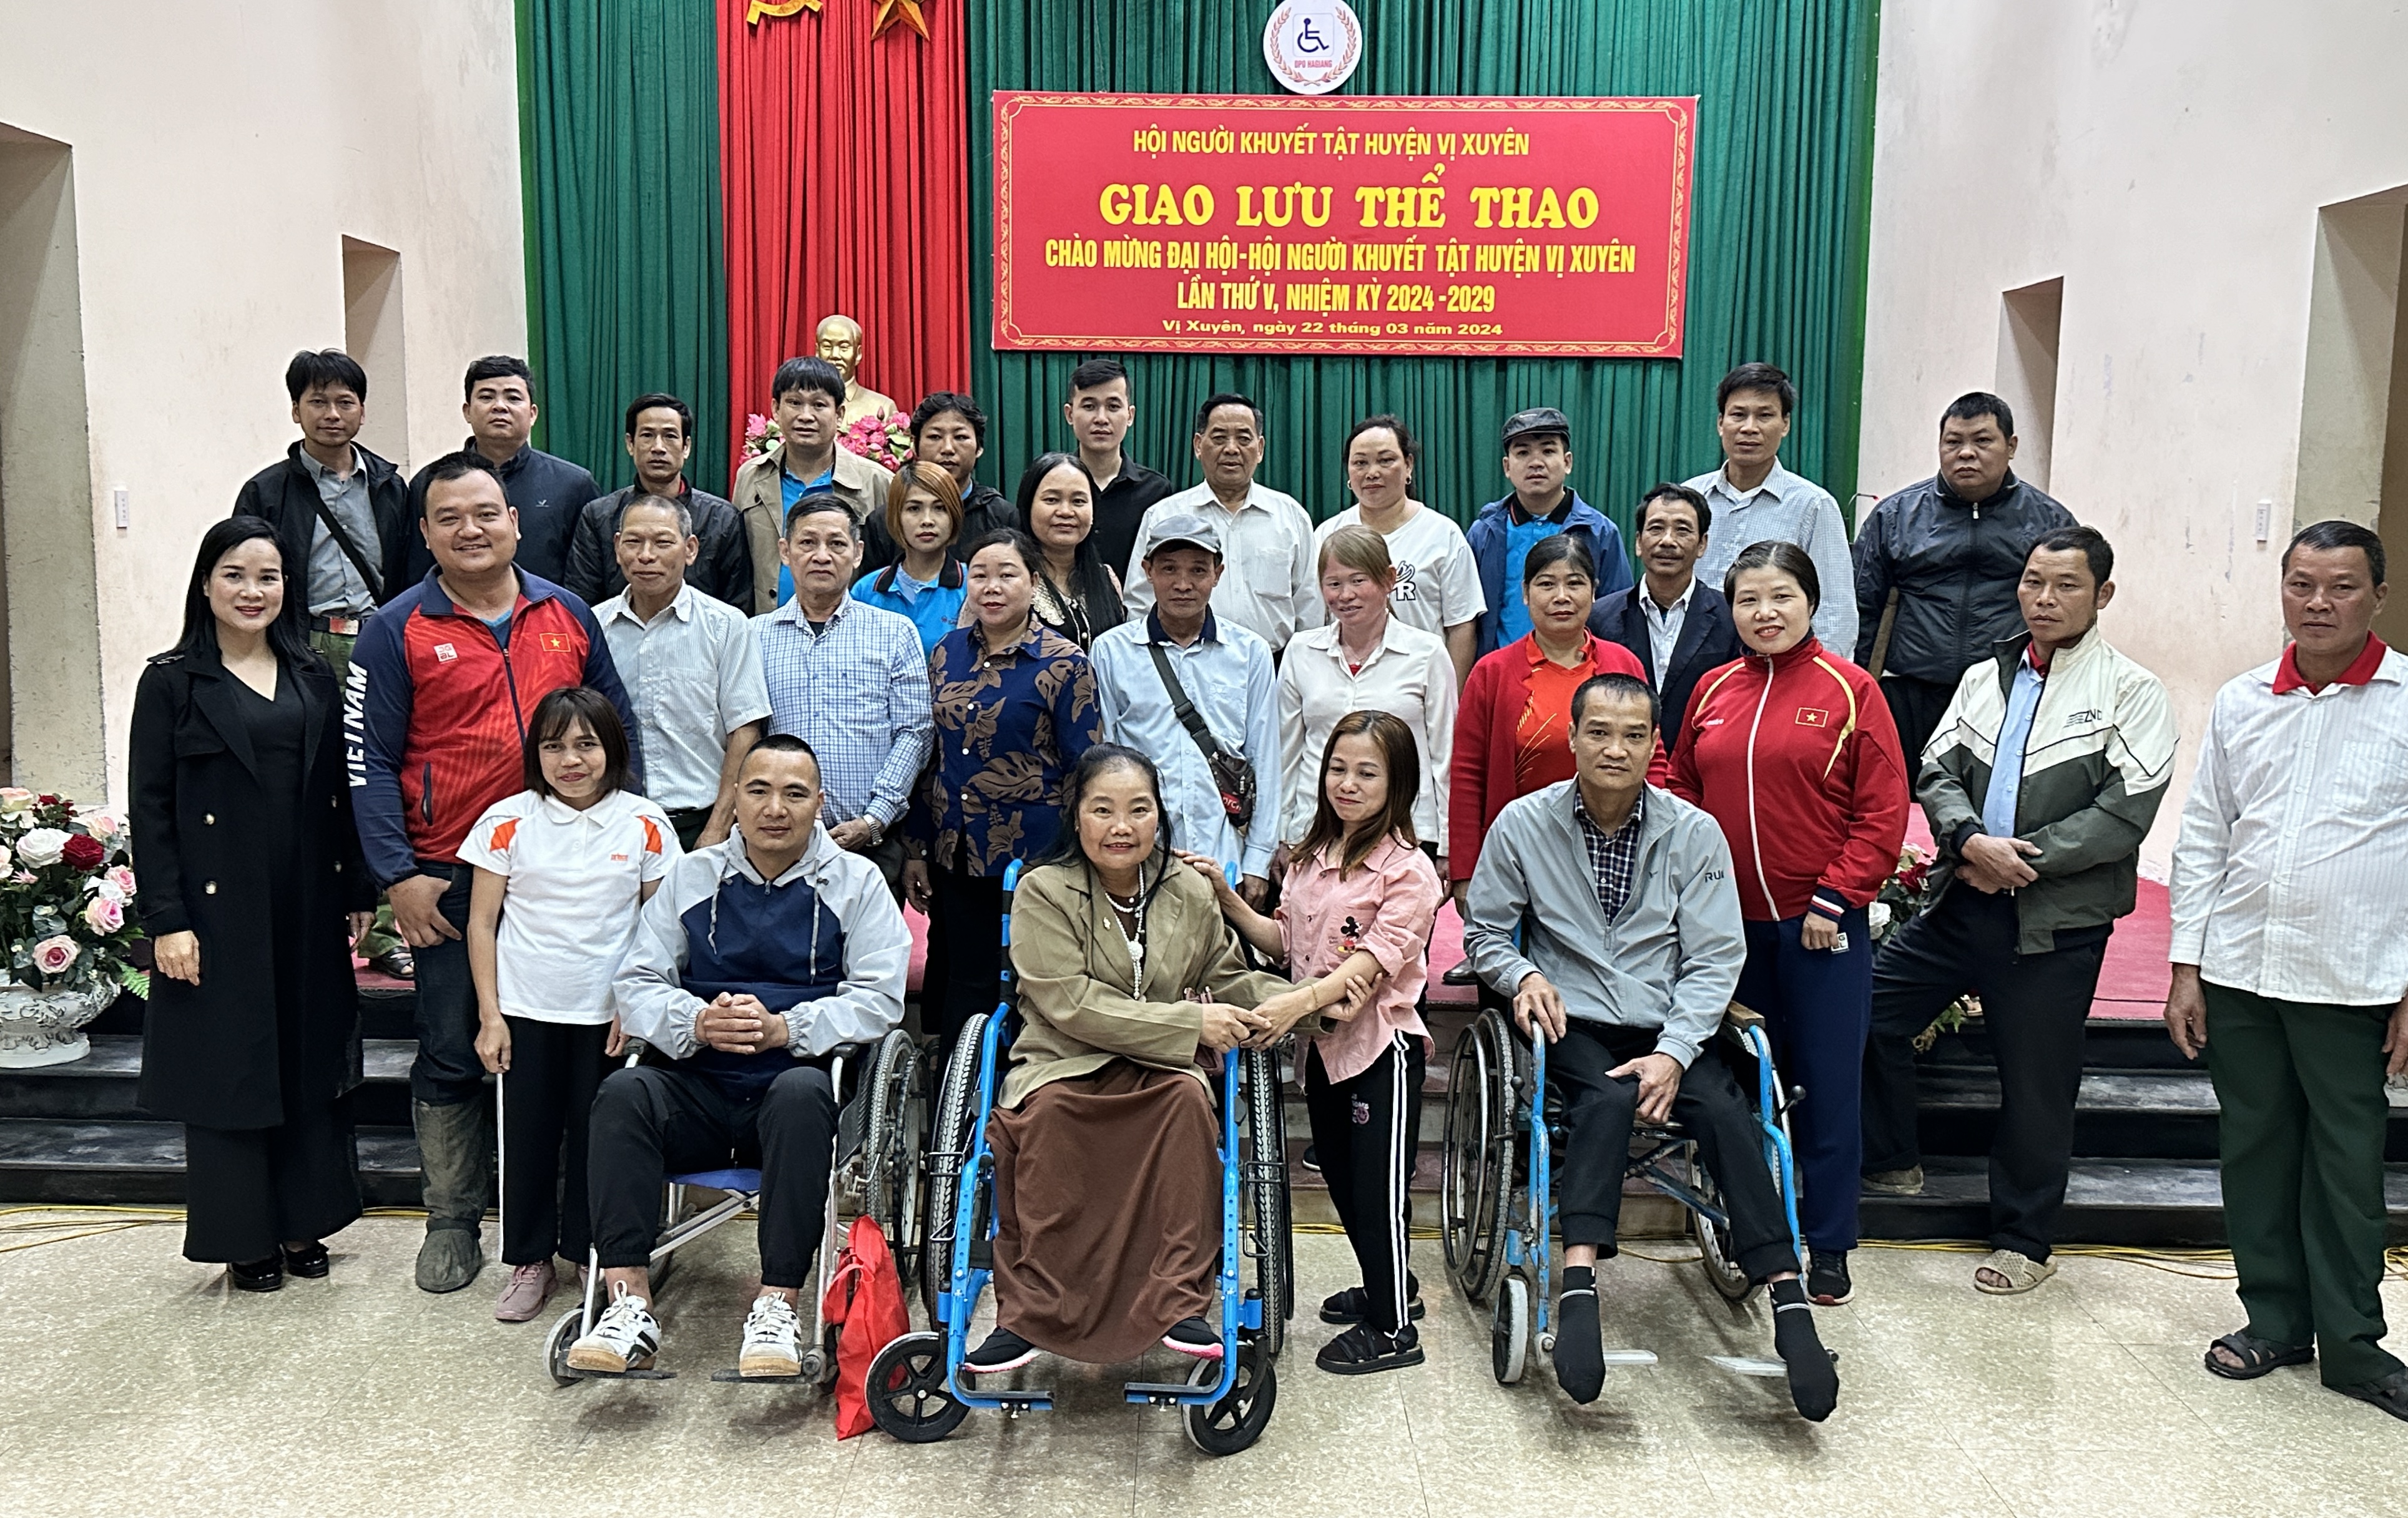 Giao lưu thể thao chào mừng ĐH Hội người khuyết tật huyện Vị Xuyên.